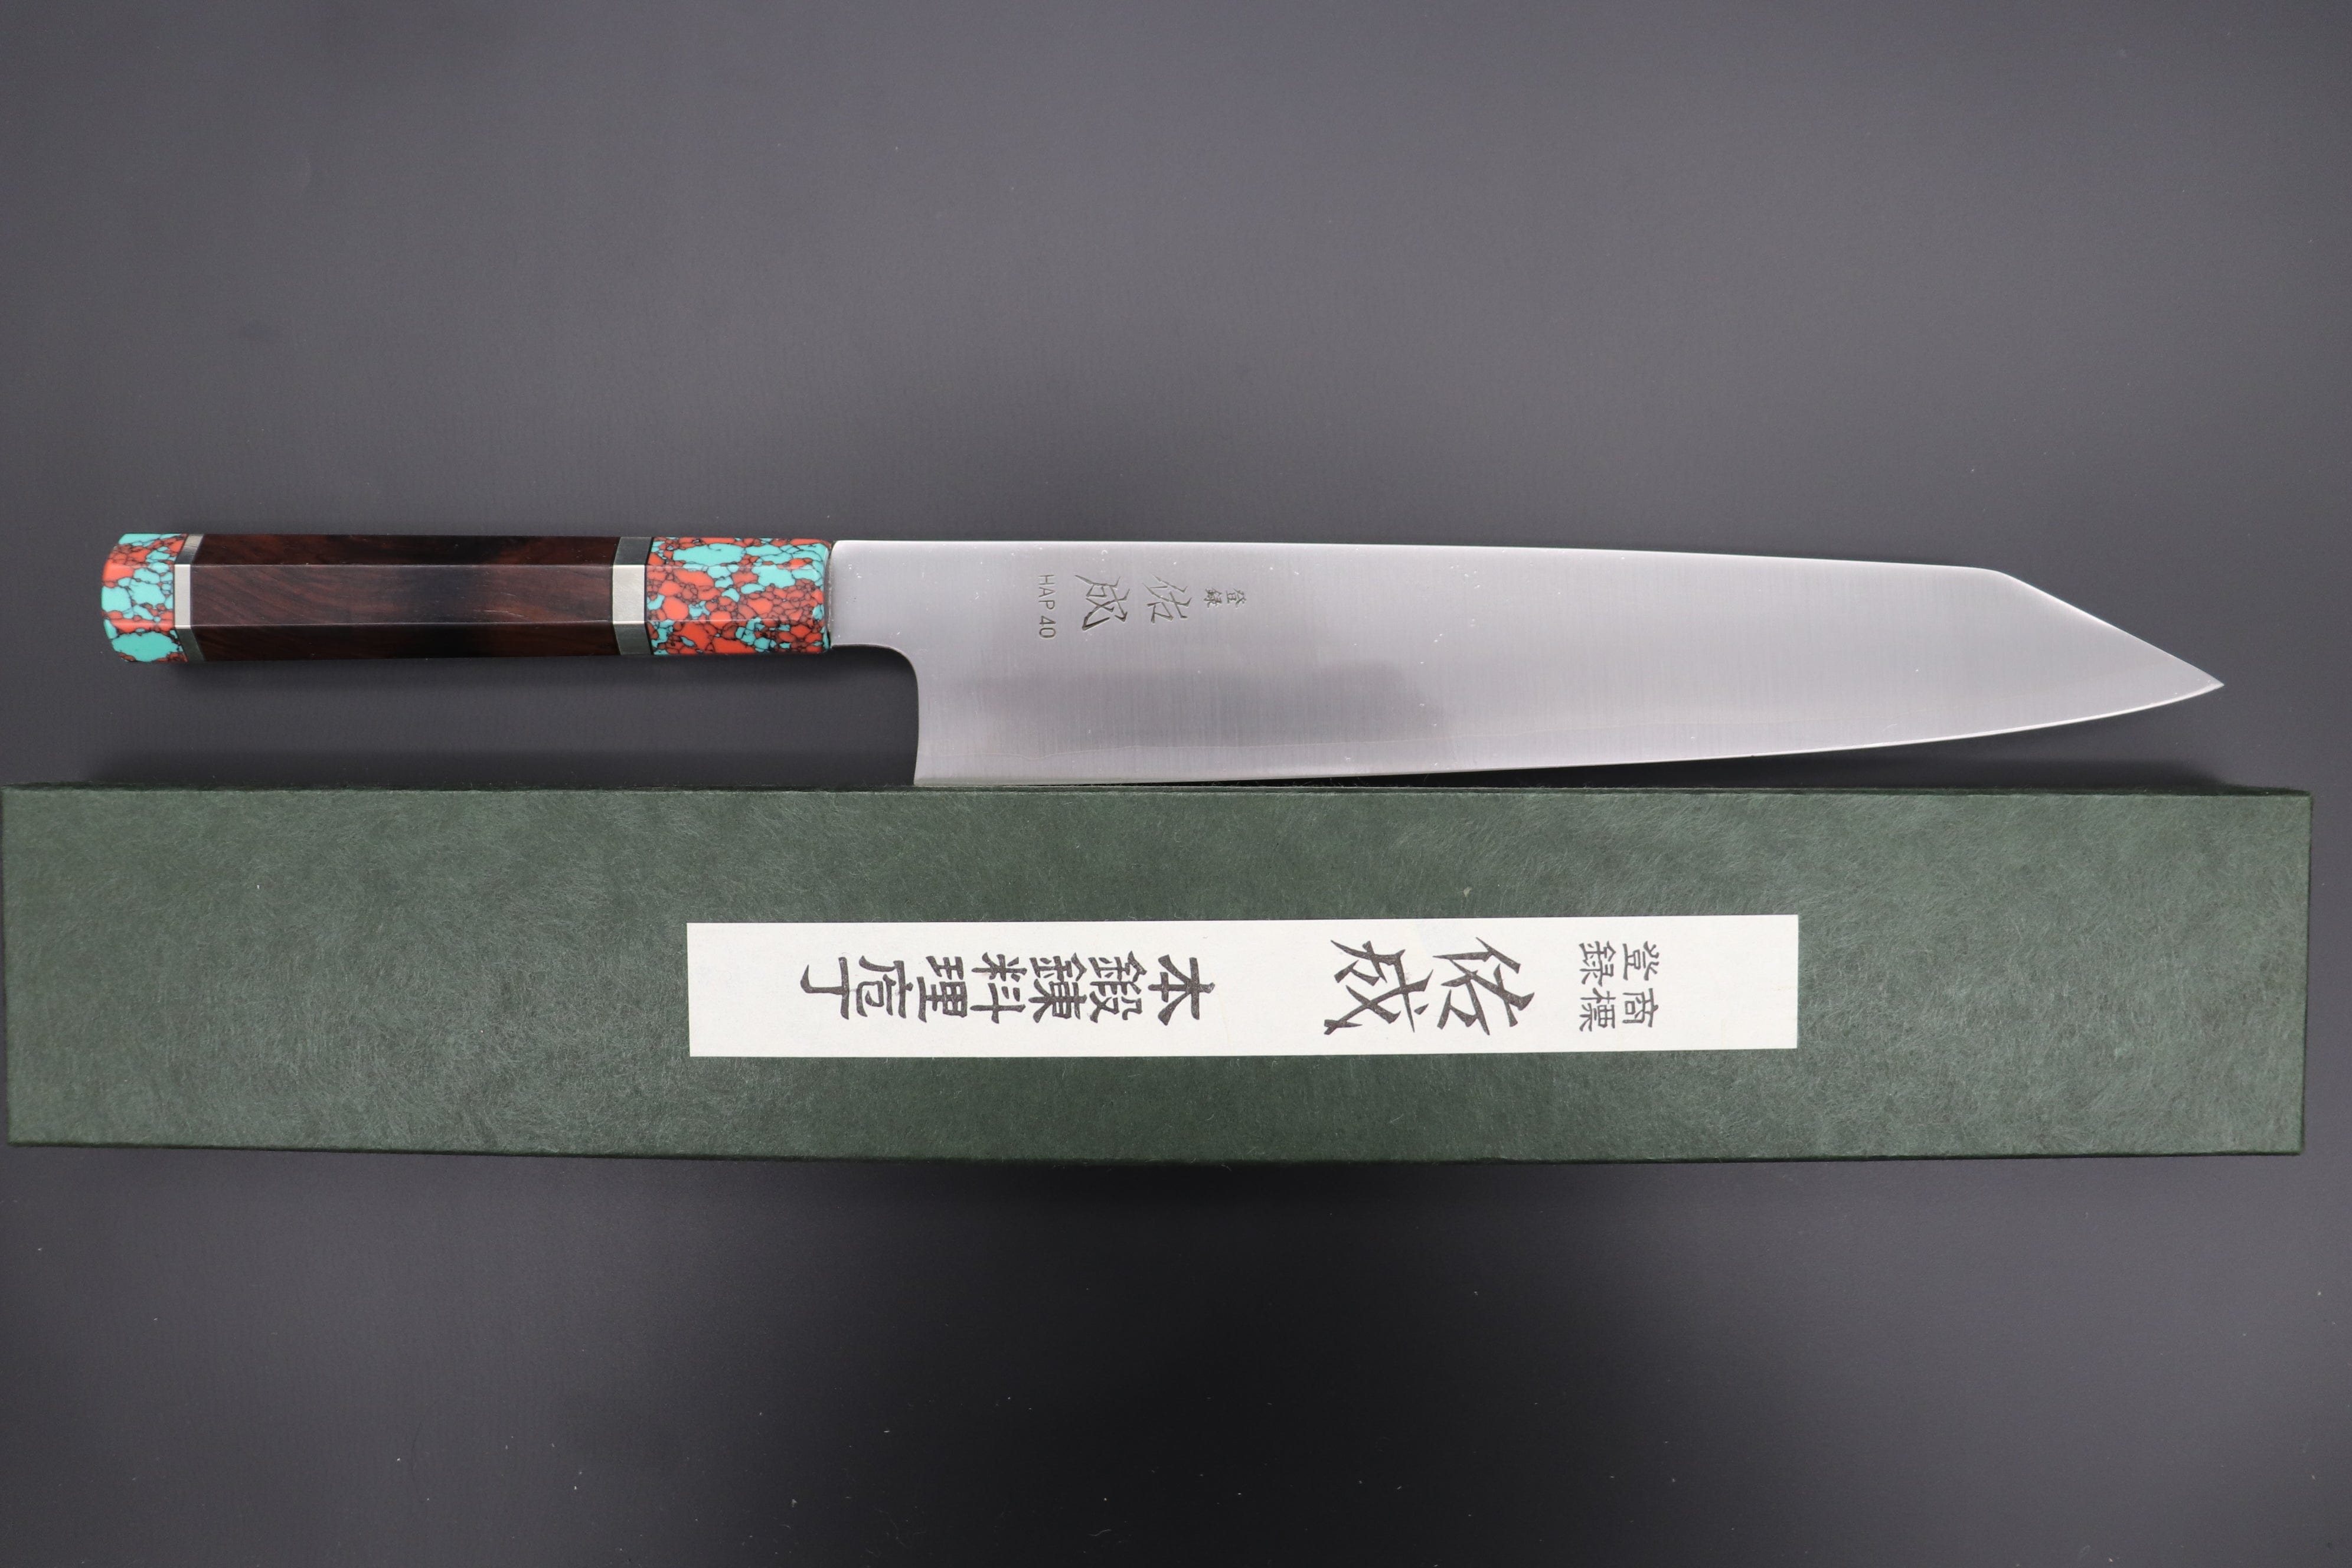 https://japanesechefsknife.com/cdn/shop/files/sukenari-kiritsuke-custom-limited-edition-sukenari-hap-40-clad-kiritsuke-slicer-270mm-10-6-inch-scl-328-43283336331547.jpg?v=1698035630